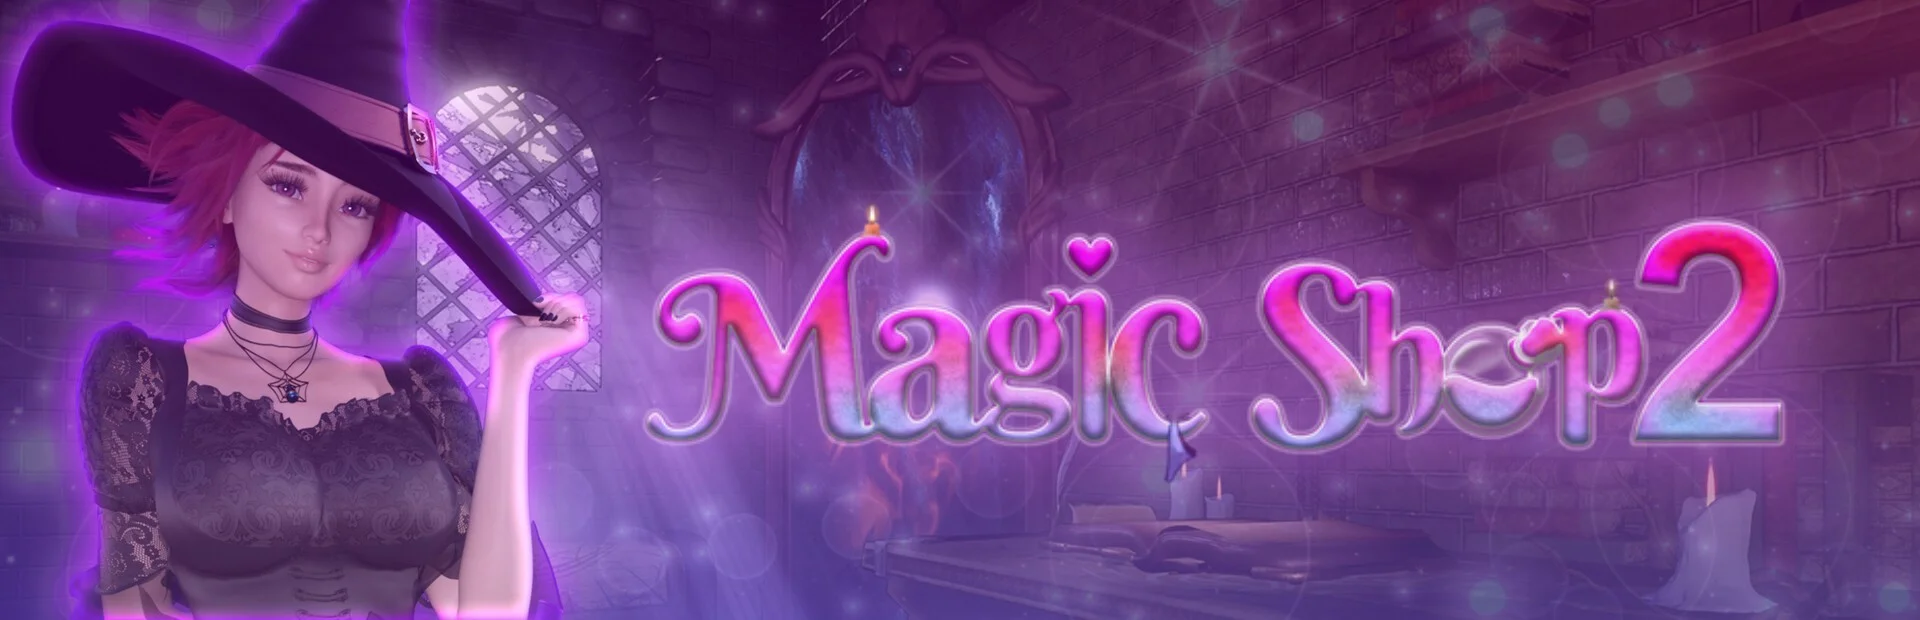 Download FireArmGames - Magic Shop 2